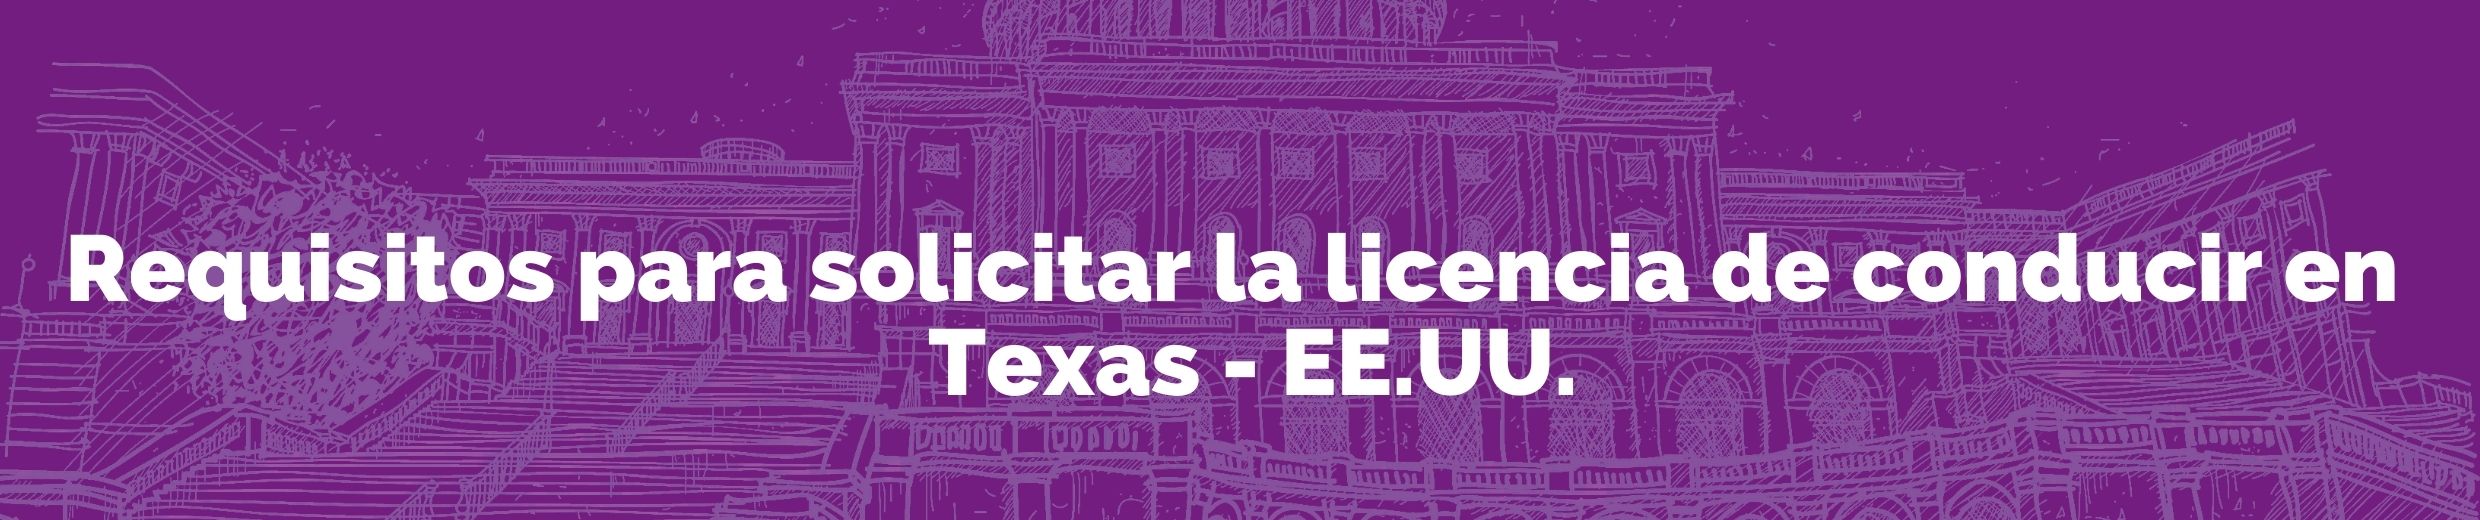 Requisitos para solicitar licencia de conducir en Texas - EE.UU. (2)